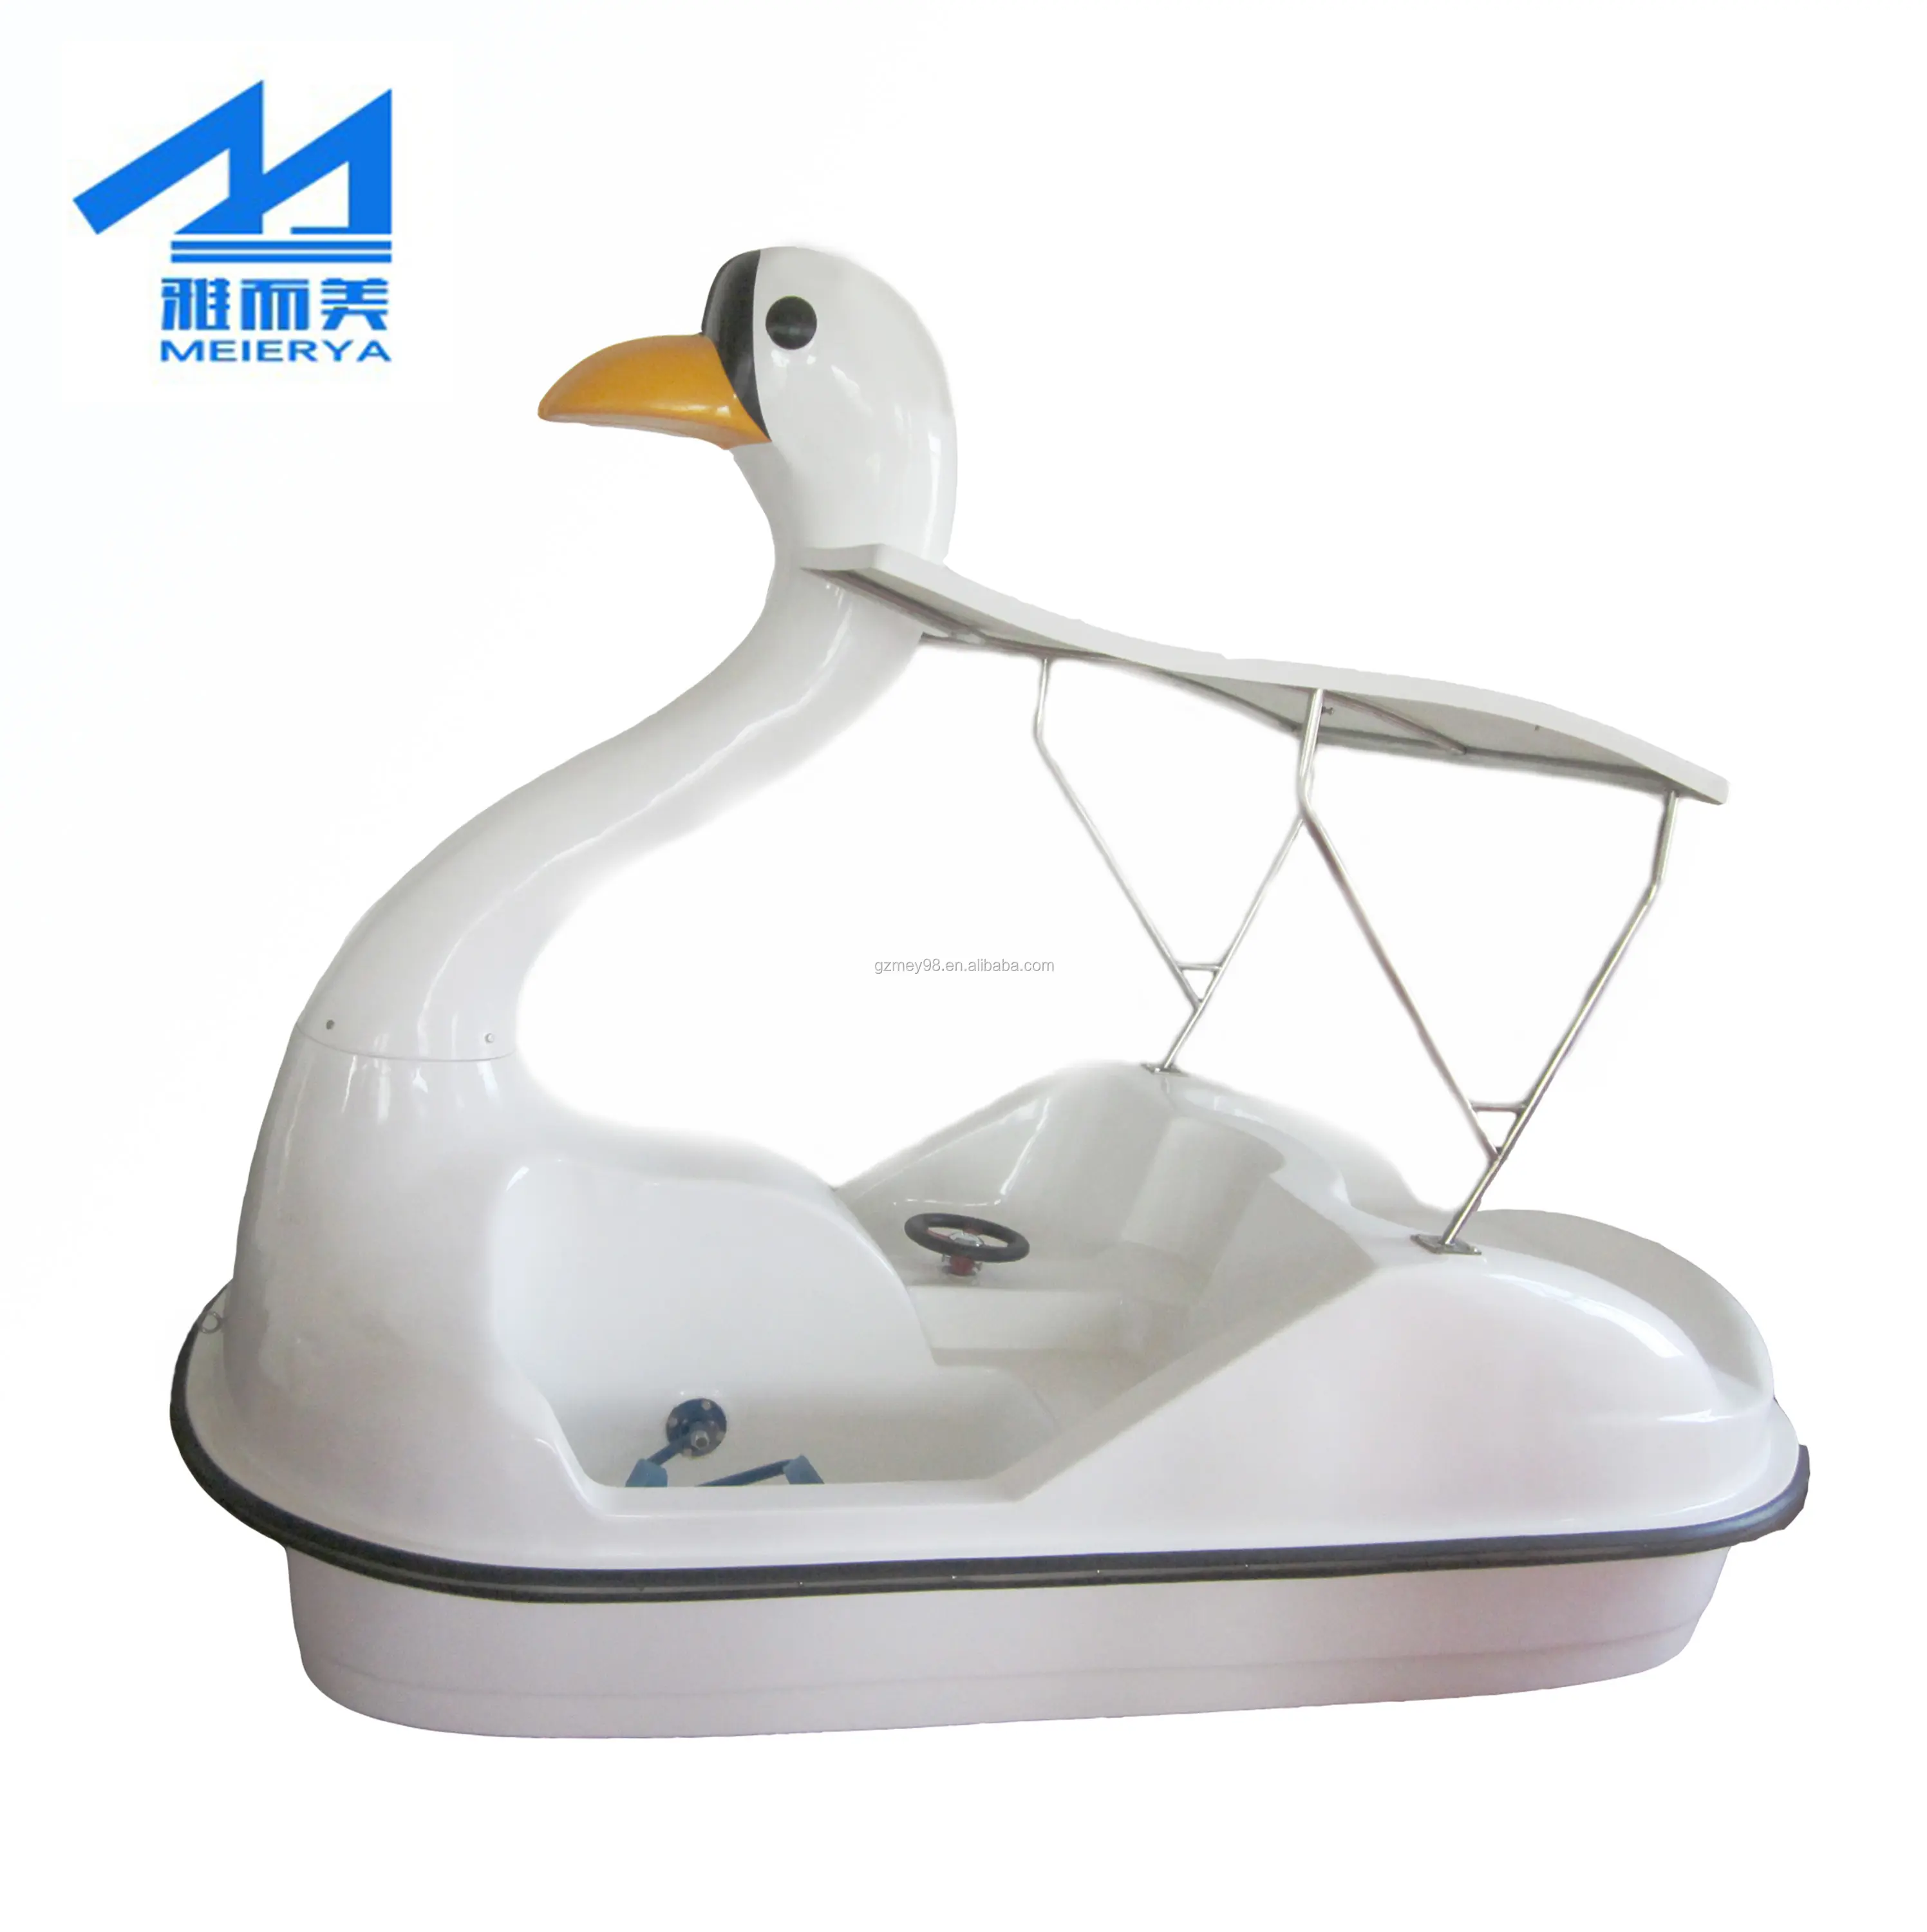 Фабричный высококачественный ФАП Педальный лодка парусный велосипед Электрический лодка водный развлекательный Лебедь Педальный лодка для продажи